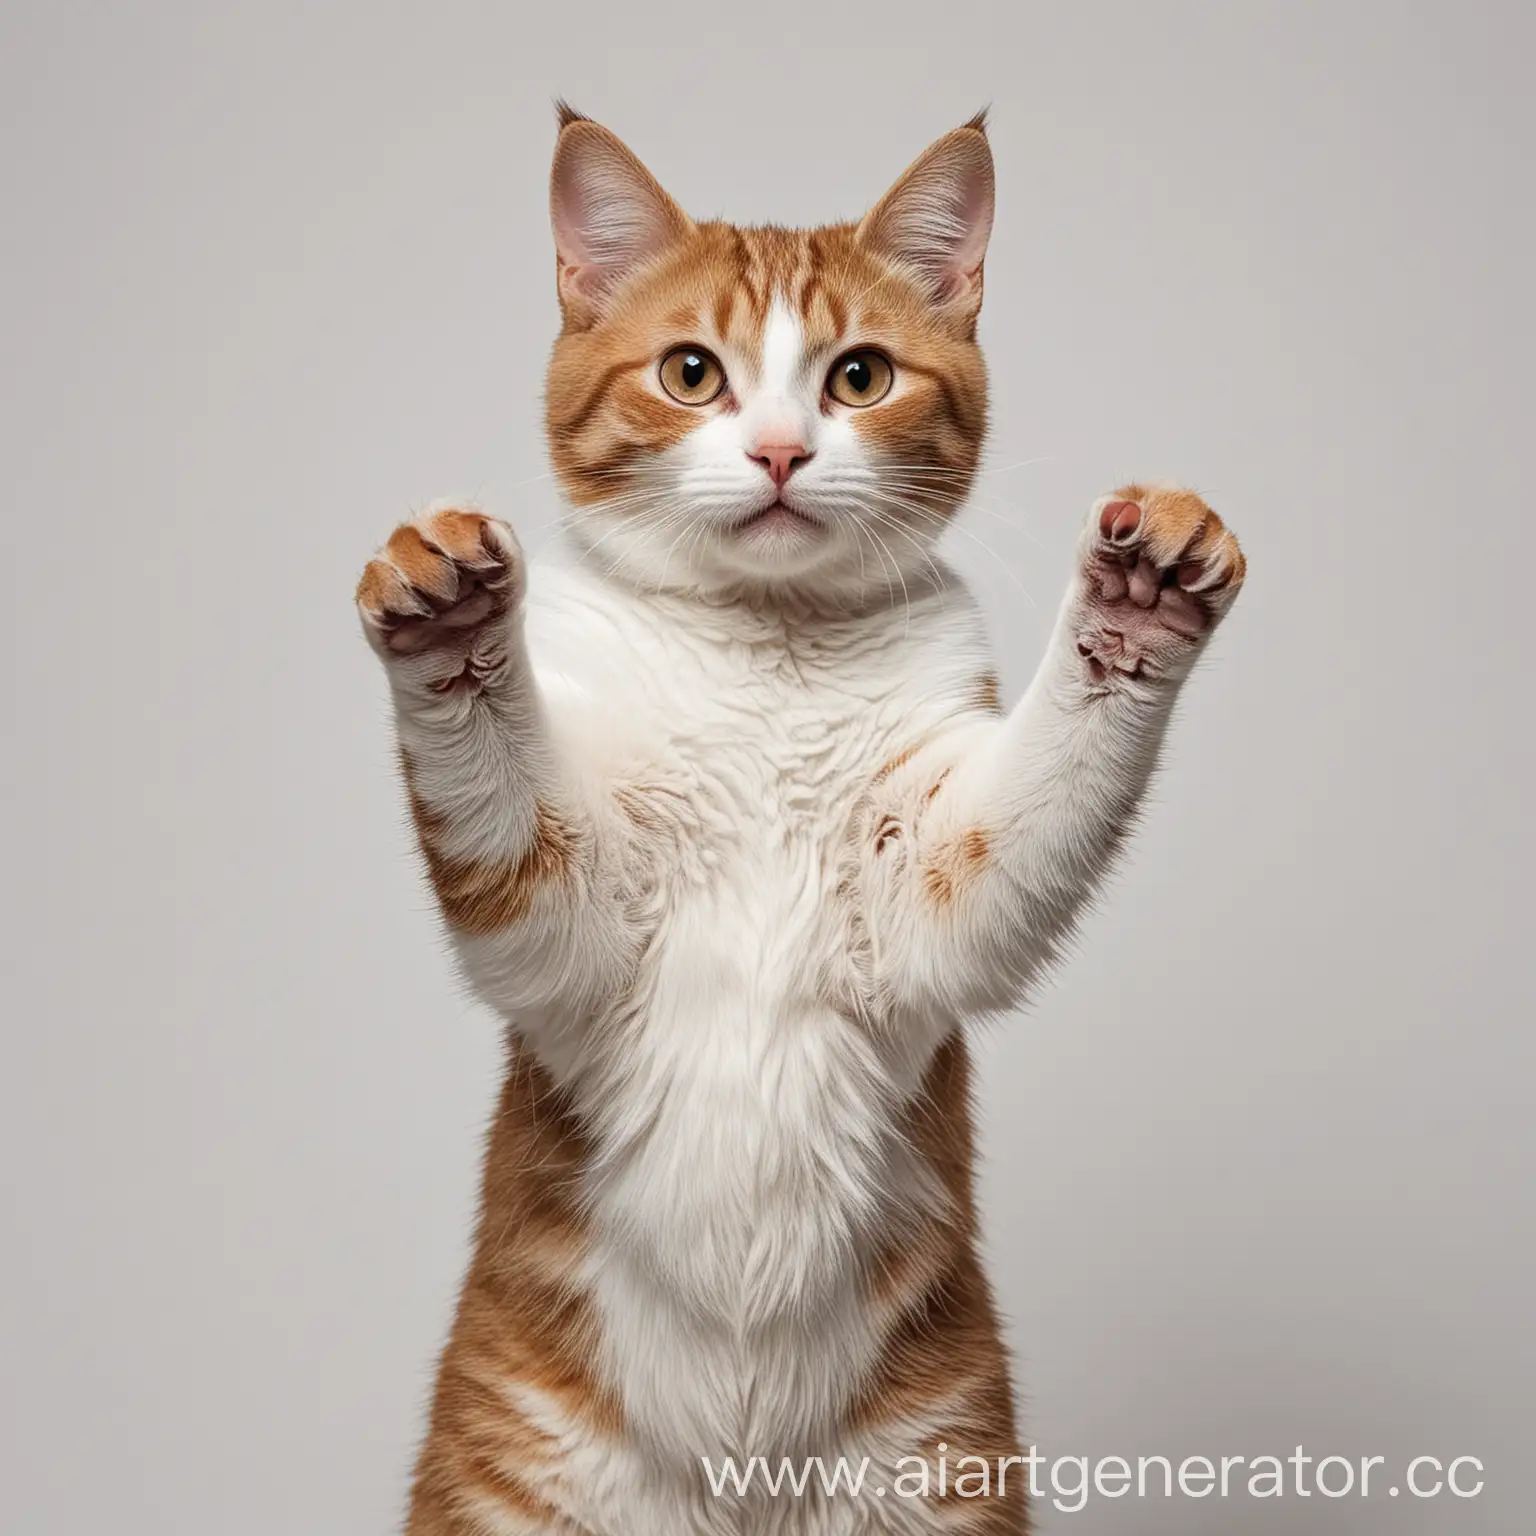 Curious-Cat-Raising-Paw-Adorable-Pet-Portrait-on-White-Background